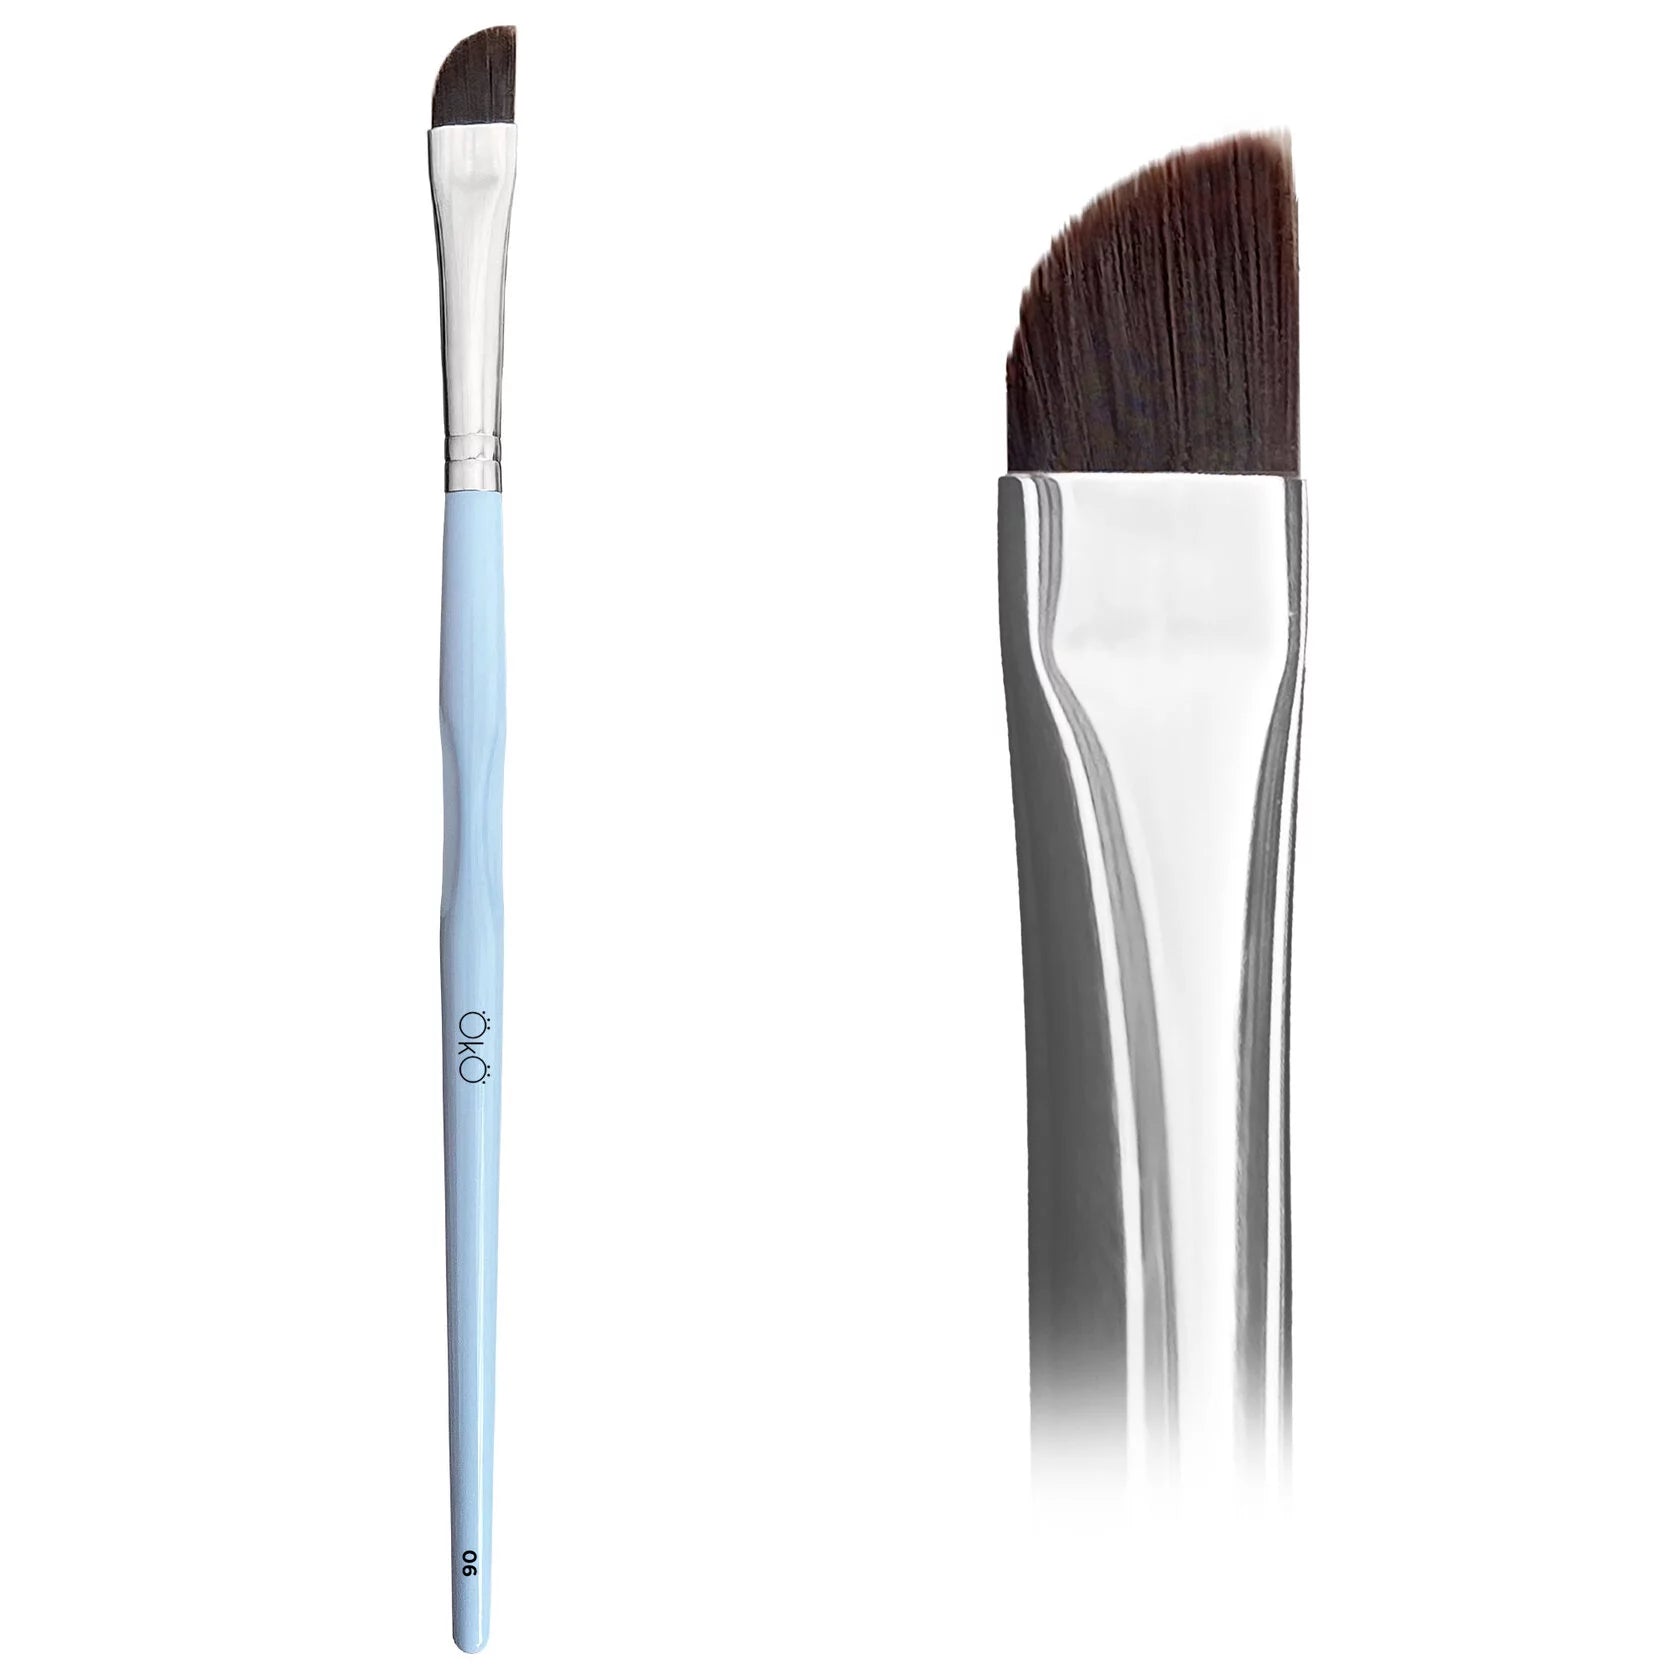 OKO - Soft Large Angled Brush (#6)